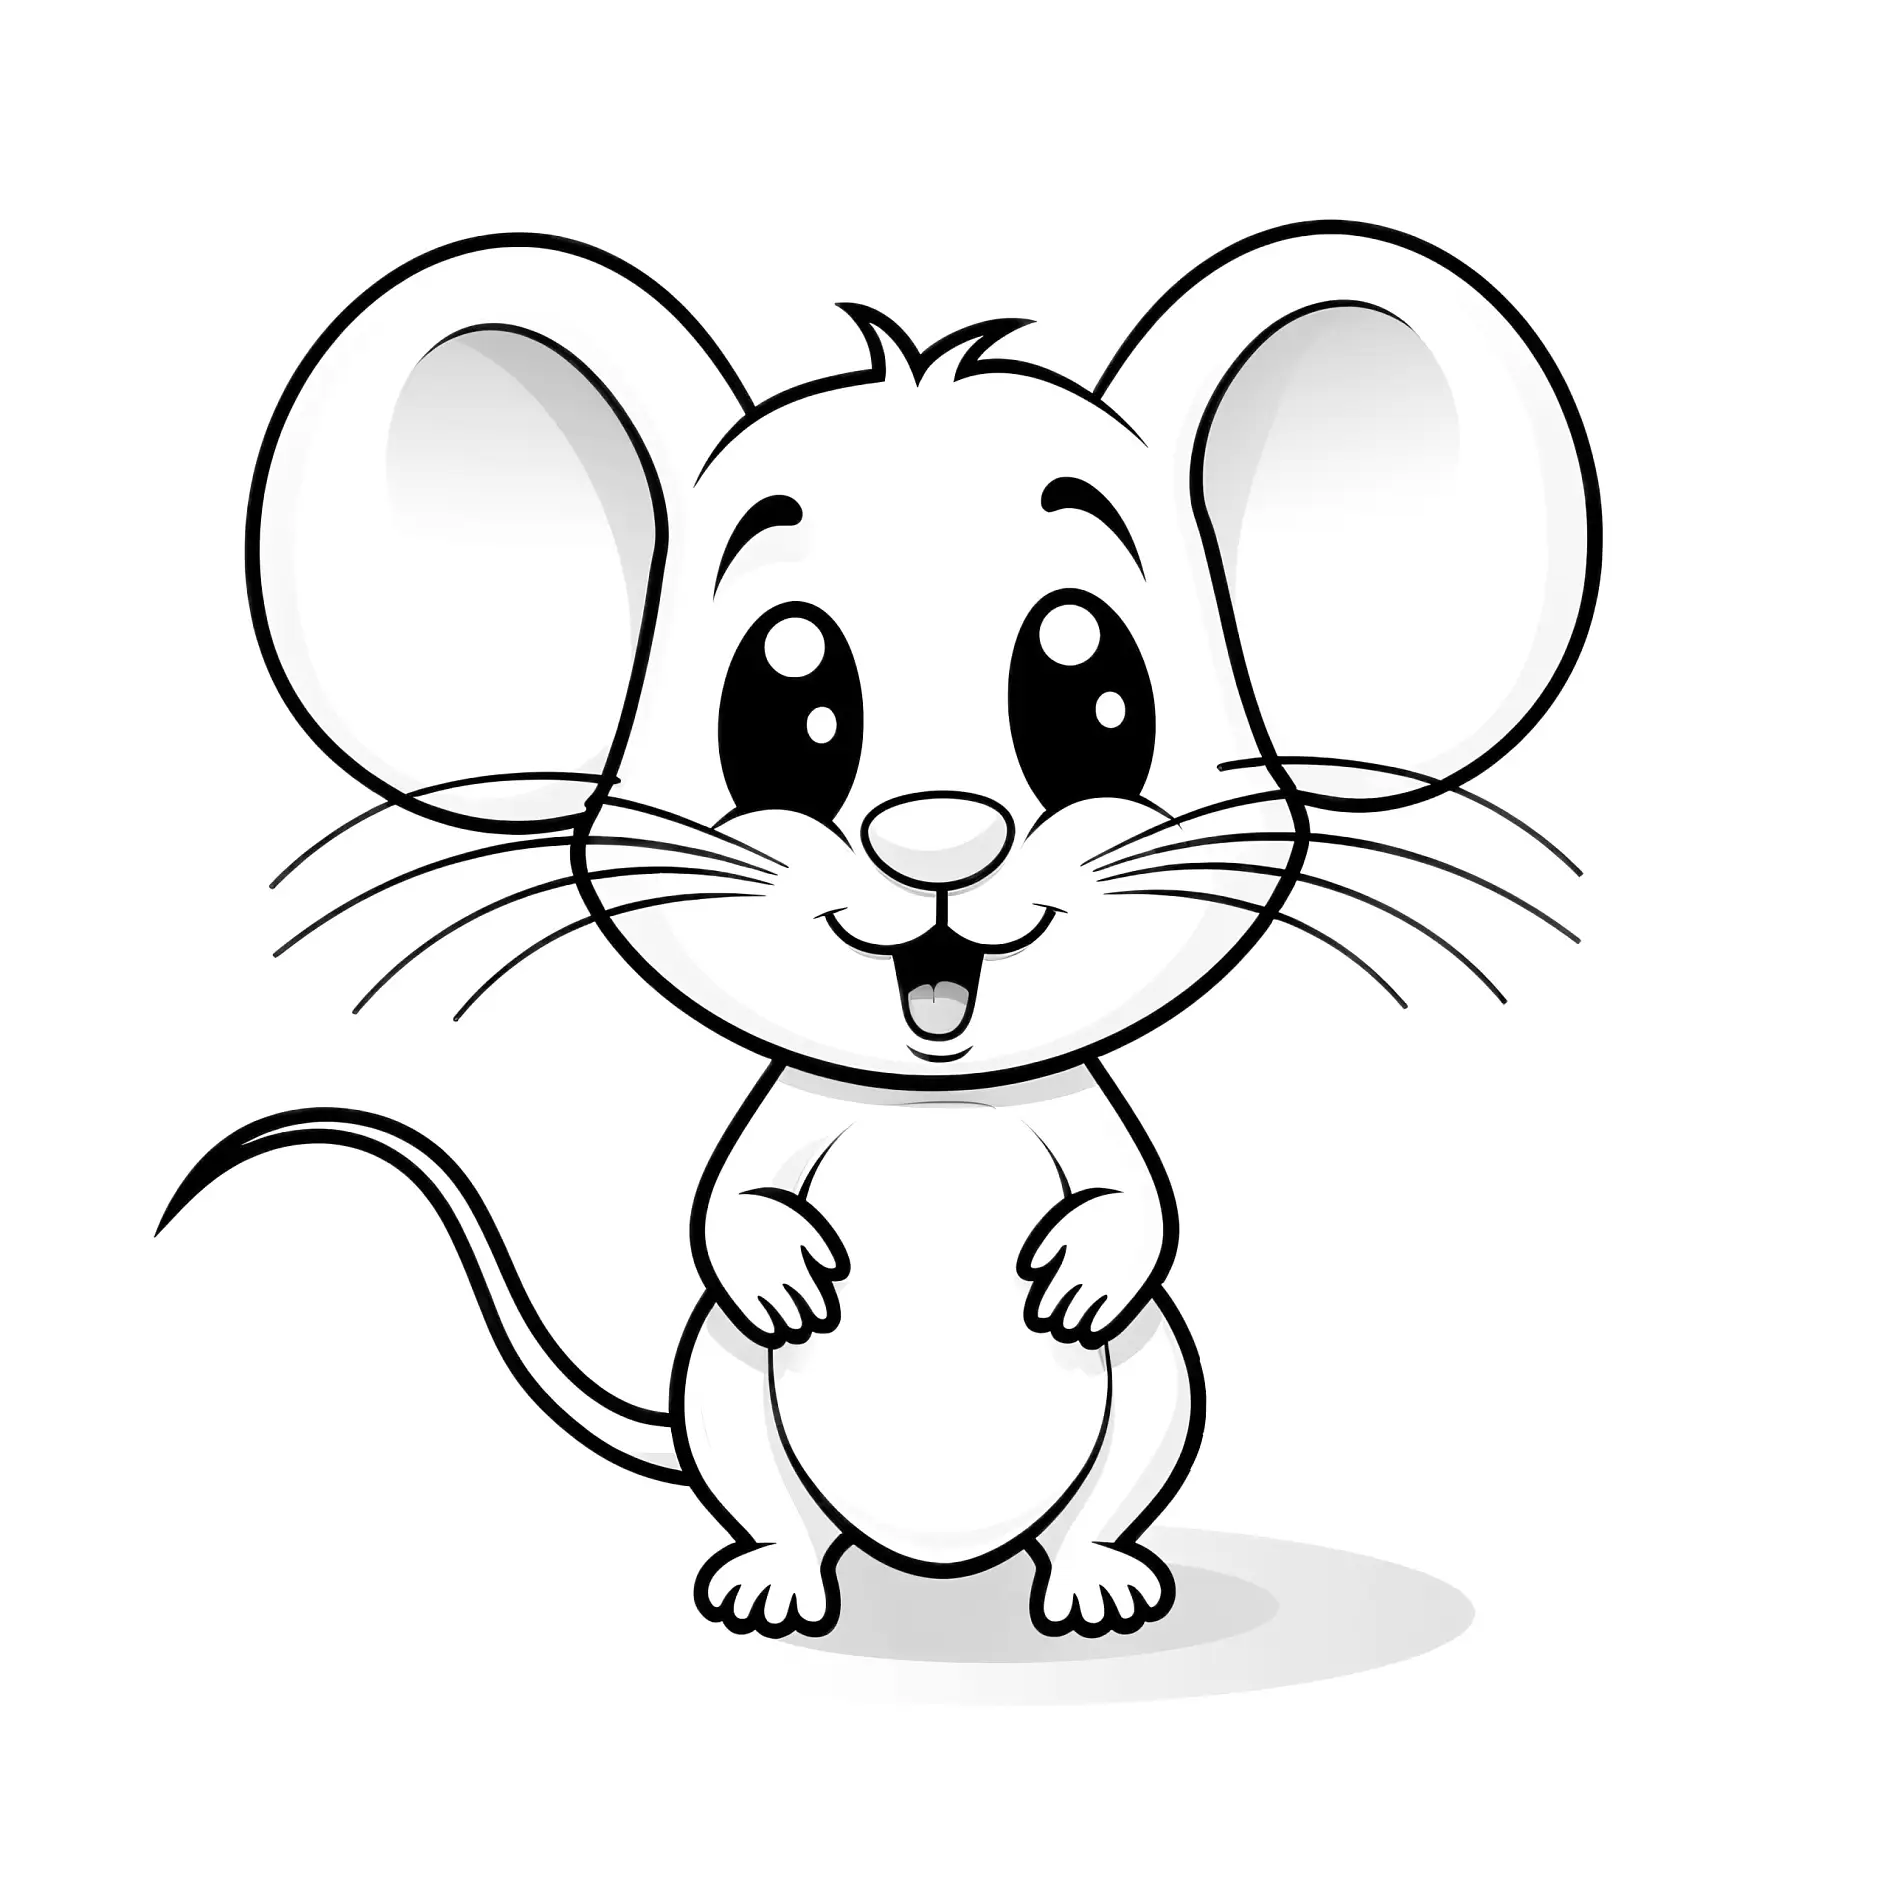 Ausmalbild Maus frontal mit großen Ohren und Lächeln